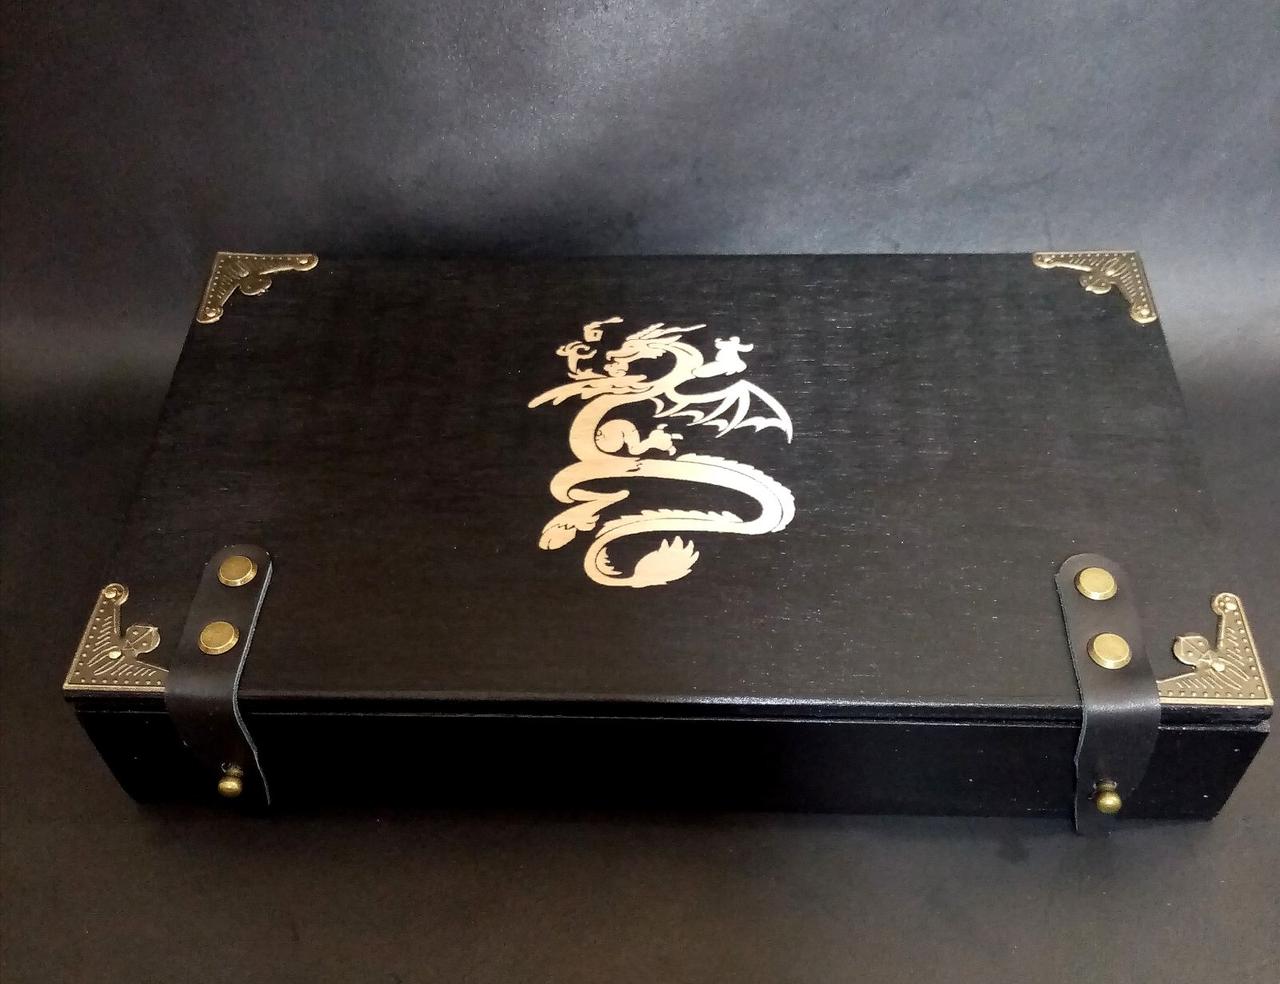 Дерев'яна подарункова ігрова коробка для гри в кості "Dice box" з гравіюванням